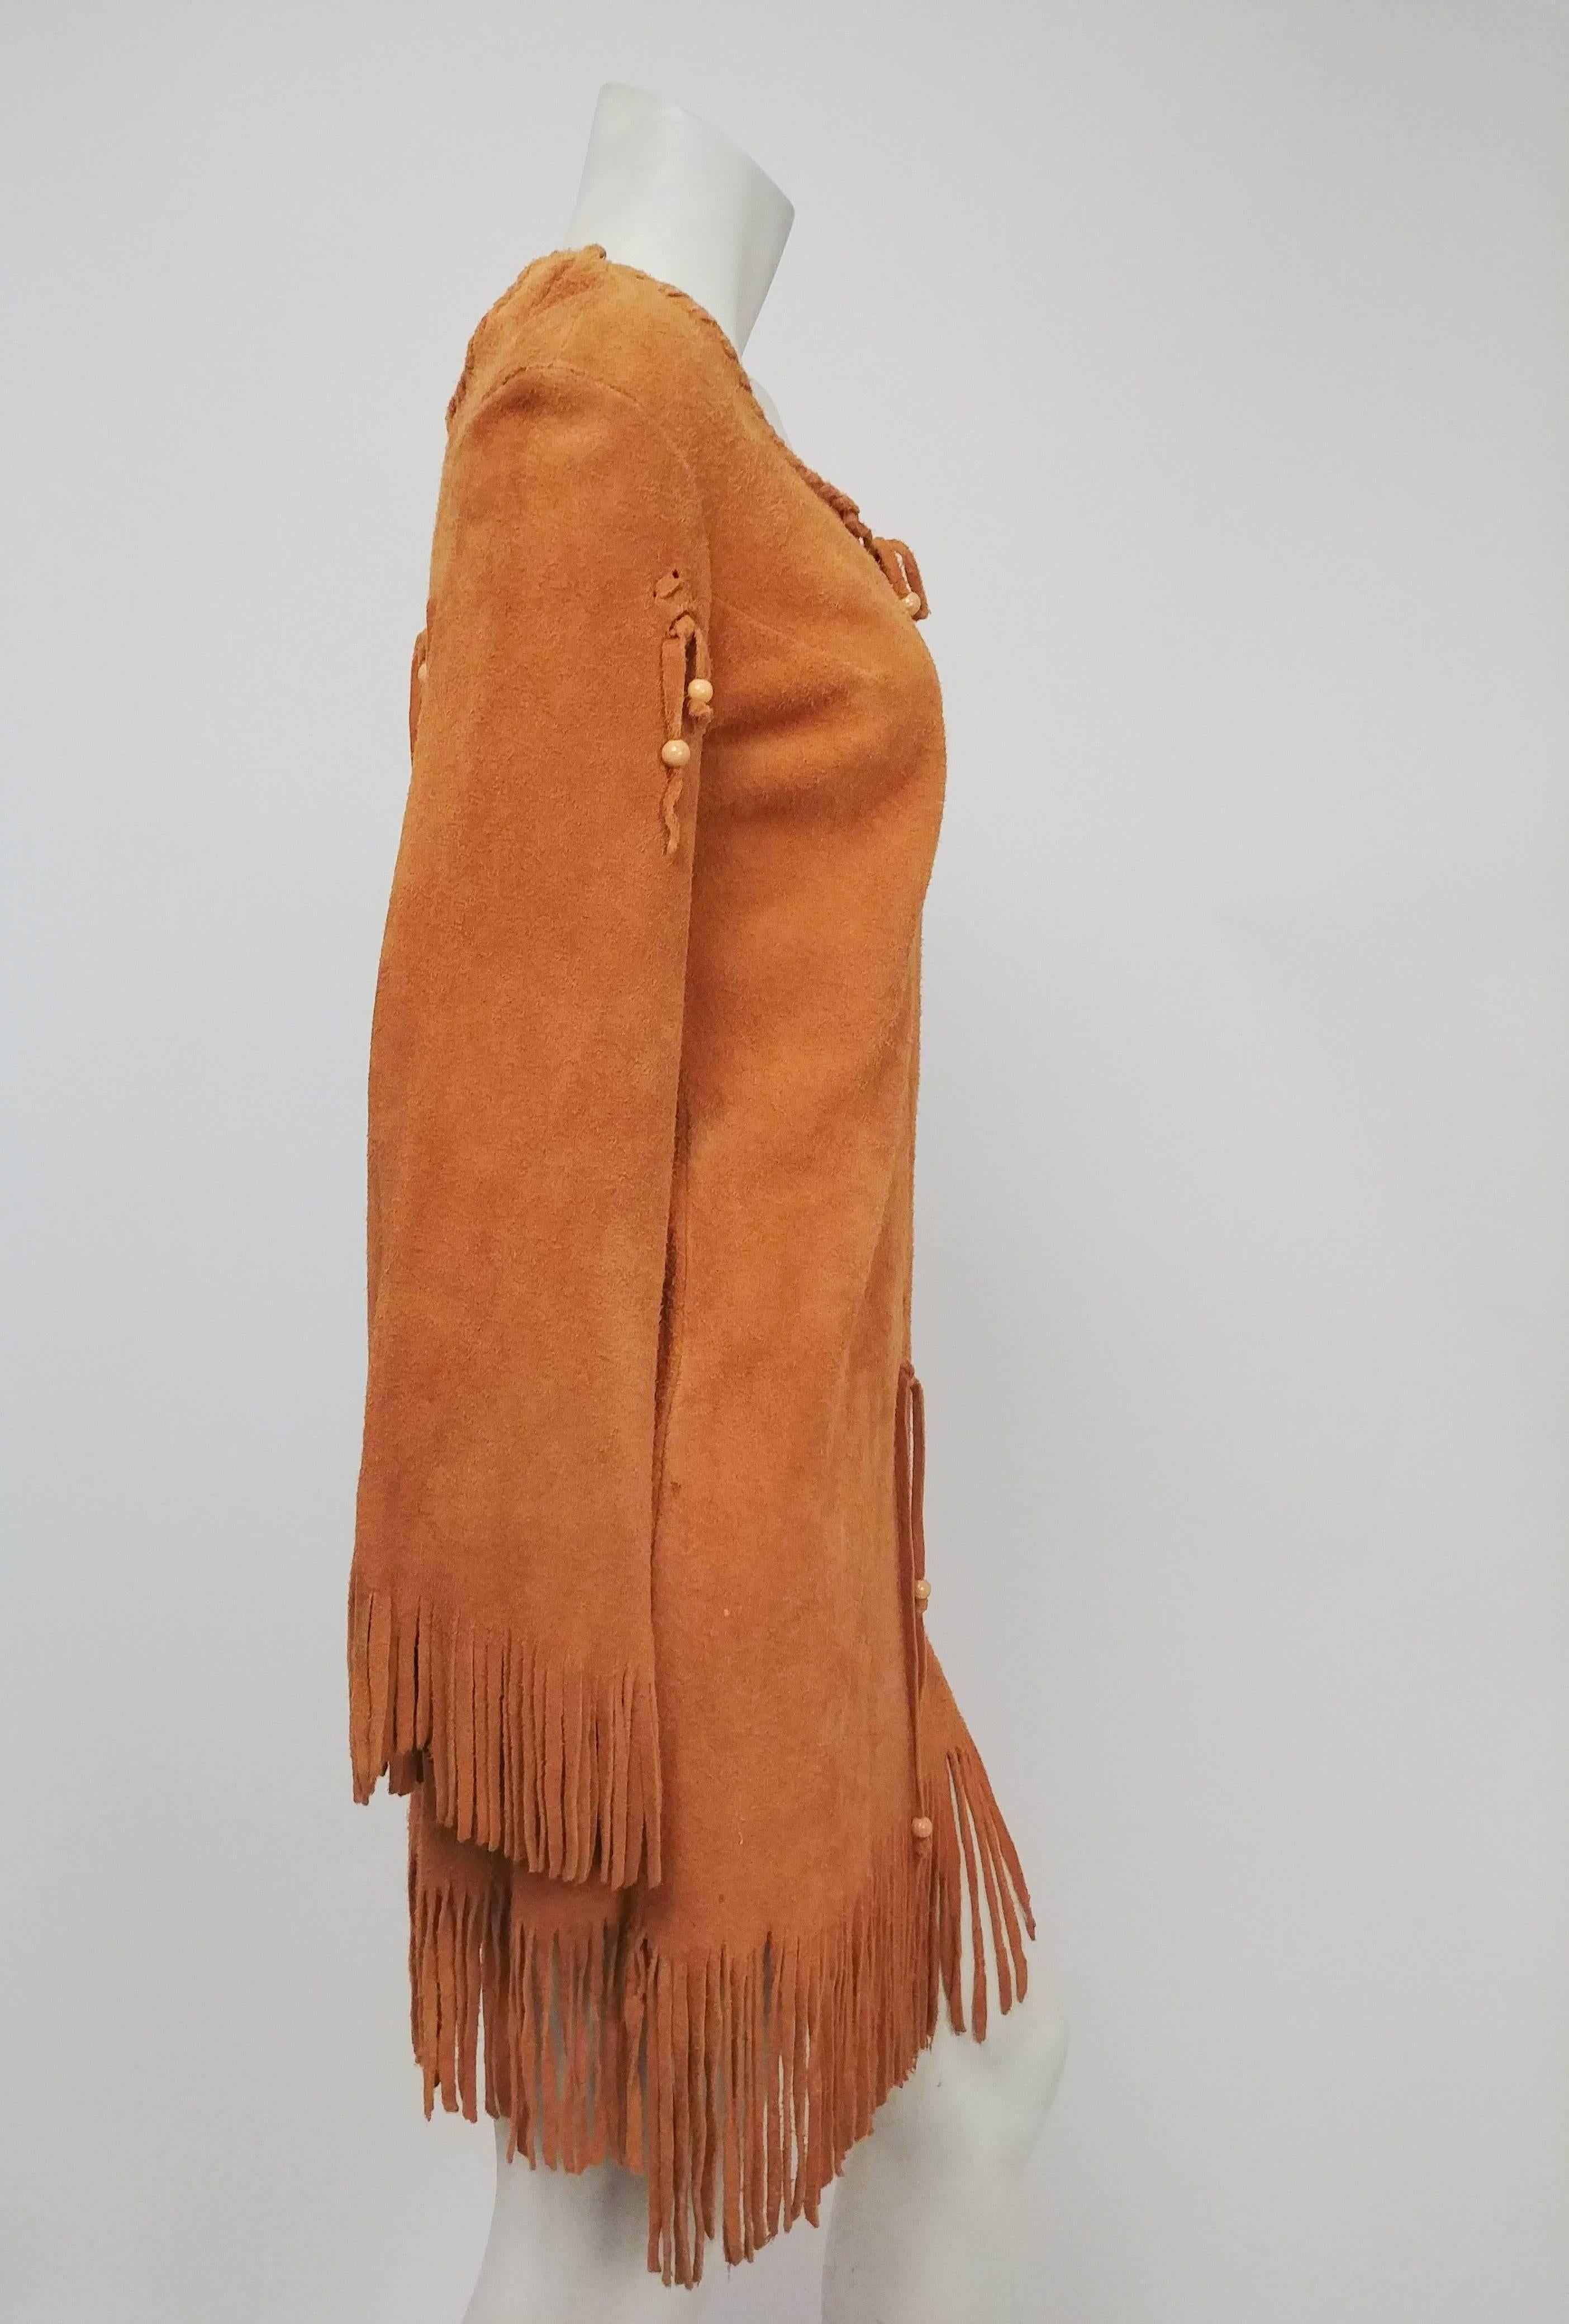 1960s Elk Suede Fringe Hippie Dress. Lace-up front and decorative fringe on back and hem. No closures. 